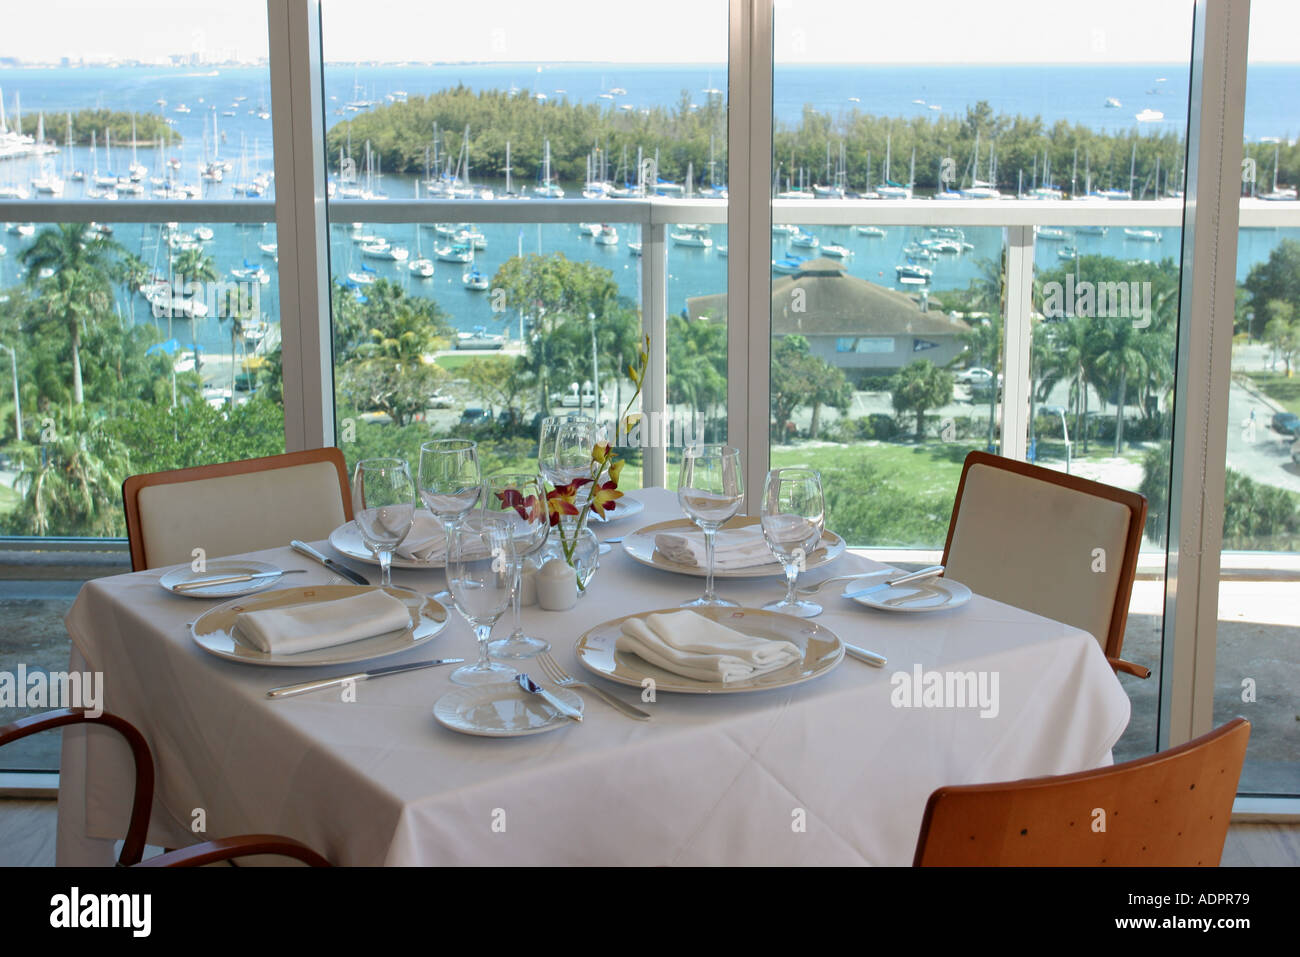 Florida Miami Coconut Grove Sonesta hôtel Panorama restaurant Biscayne Bay vue sur l'eau table à manger Banque D'Images